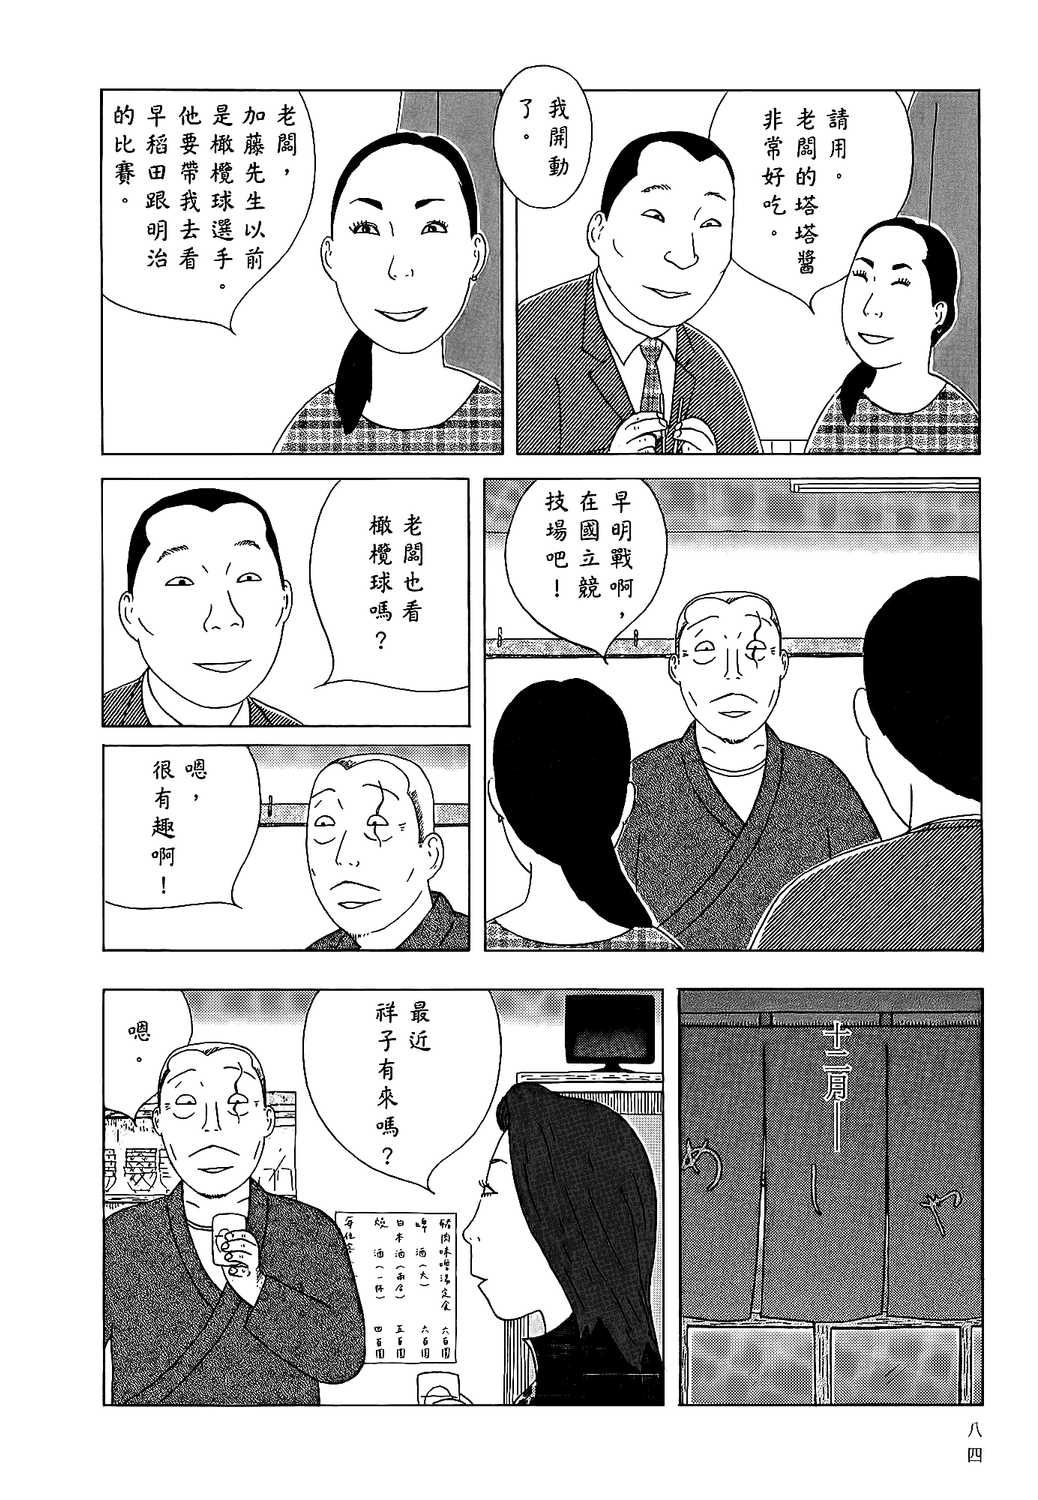 深夜食堂漫画单行本第13集 漫画db